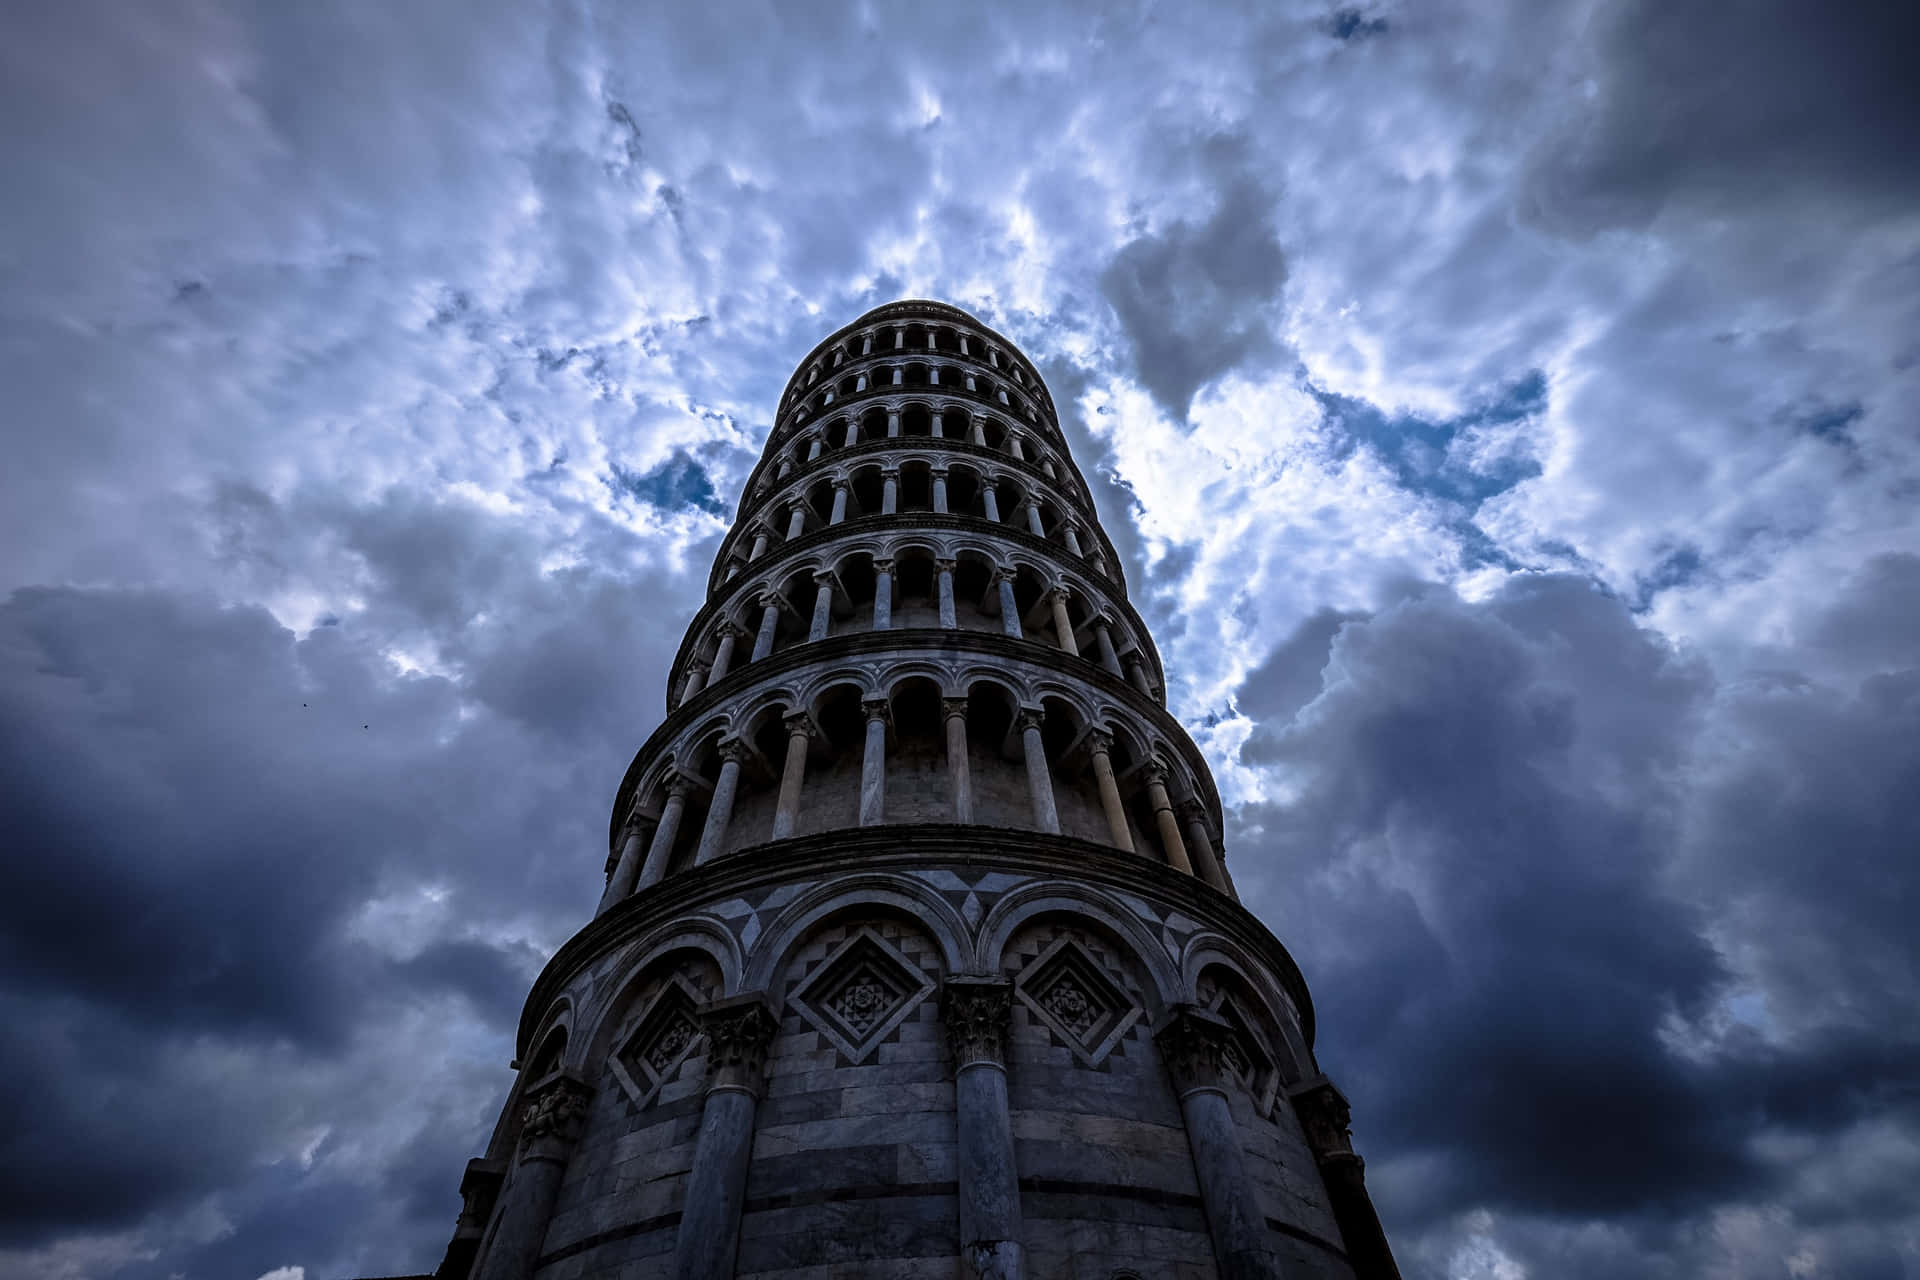 Tower Of Pisa Under Stormy Skies Wallpaper